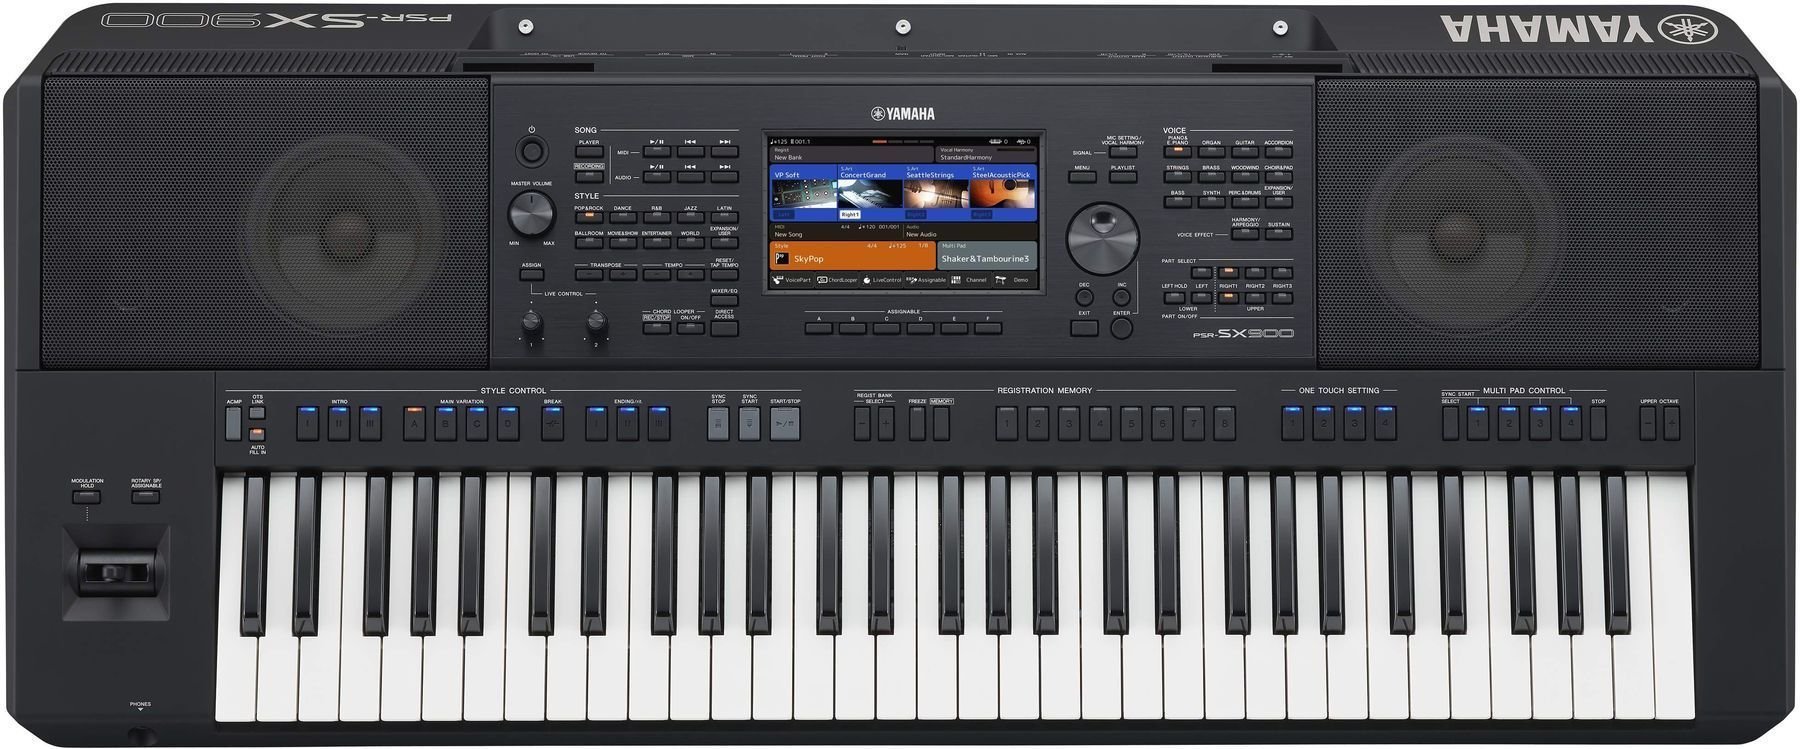 Ein detaillierter Blick auf die Keyboards der Yamaha PSR-SX-Serie